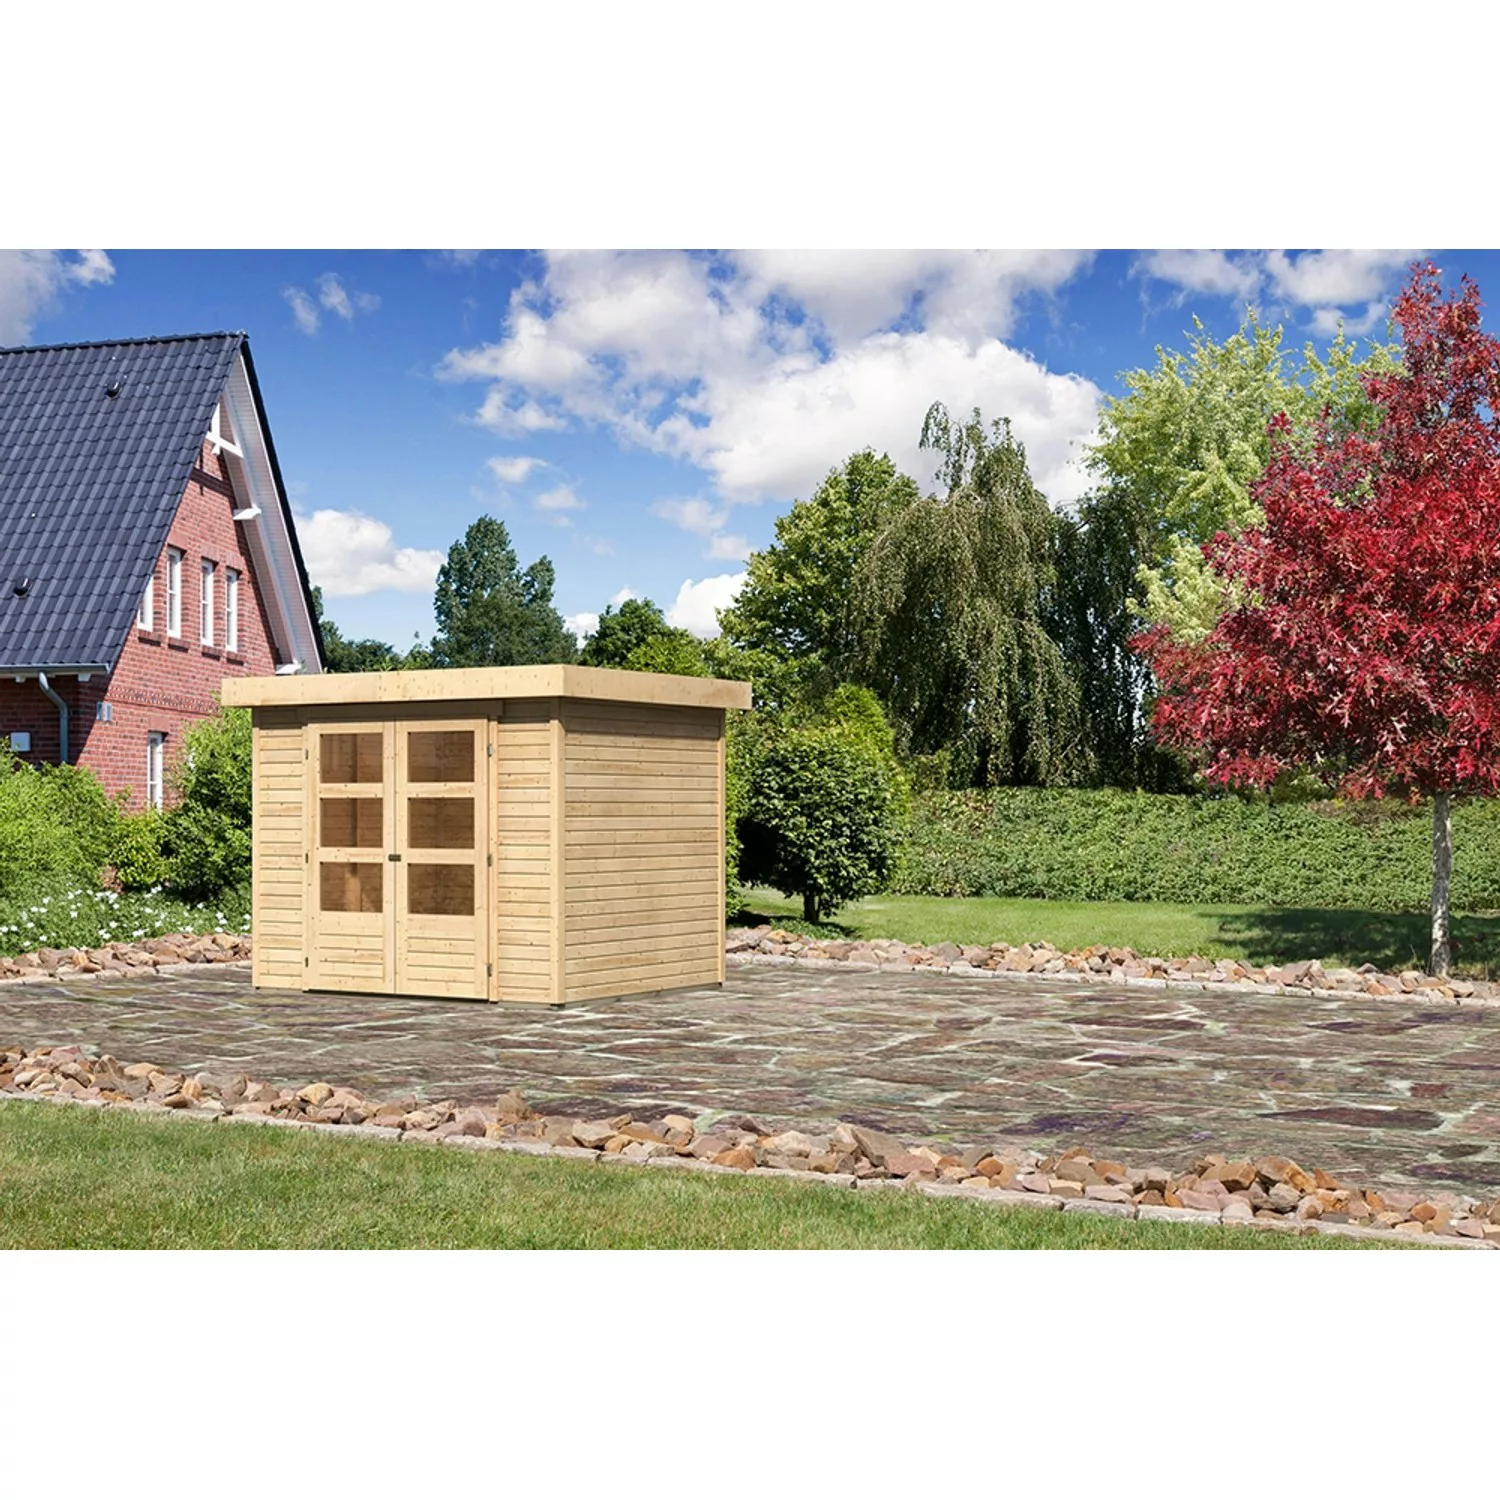 Karibu Holz-Gartenhaus Raala Sandbeige Pultdach Unbehandelt 238 cm x 213 cm günstig online kaufen